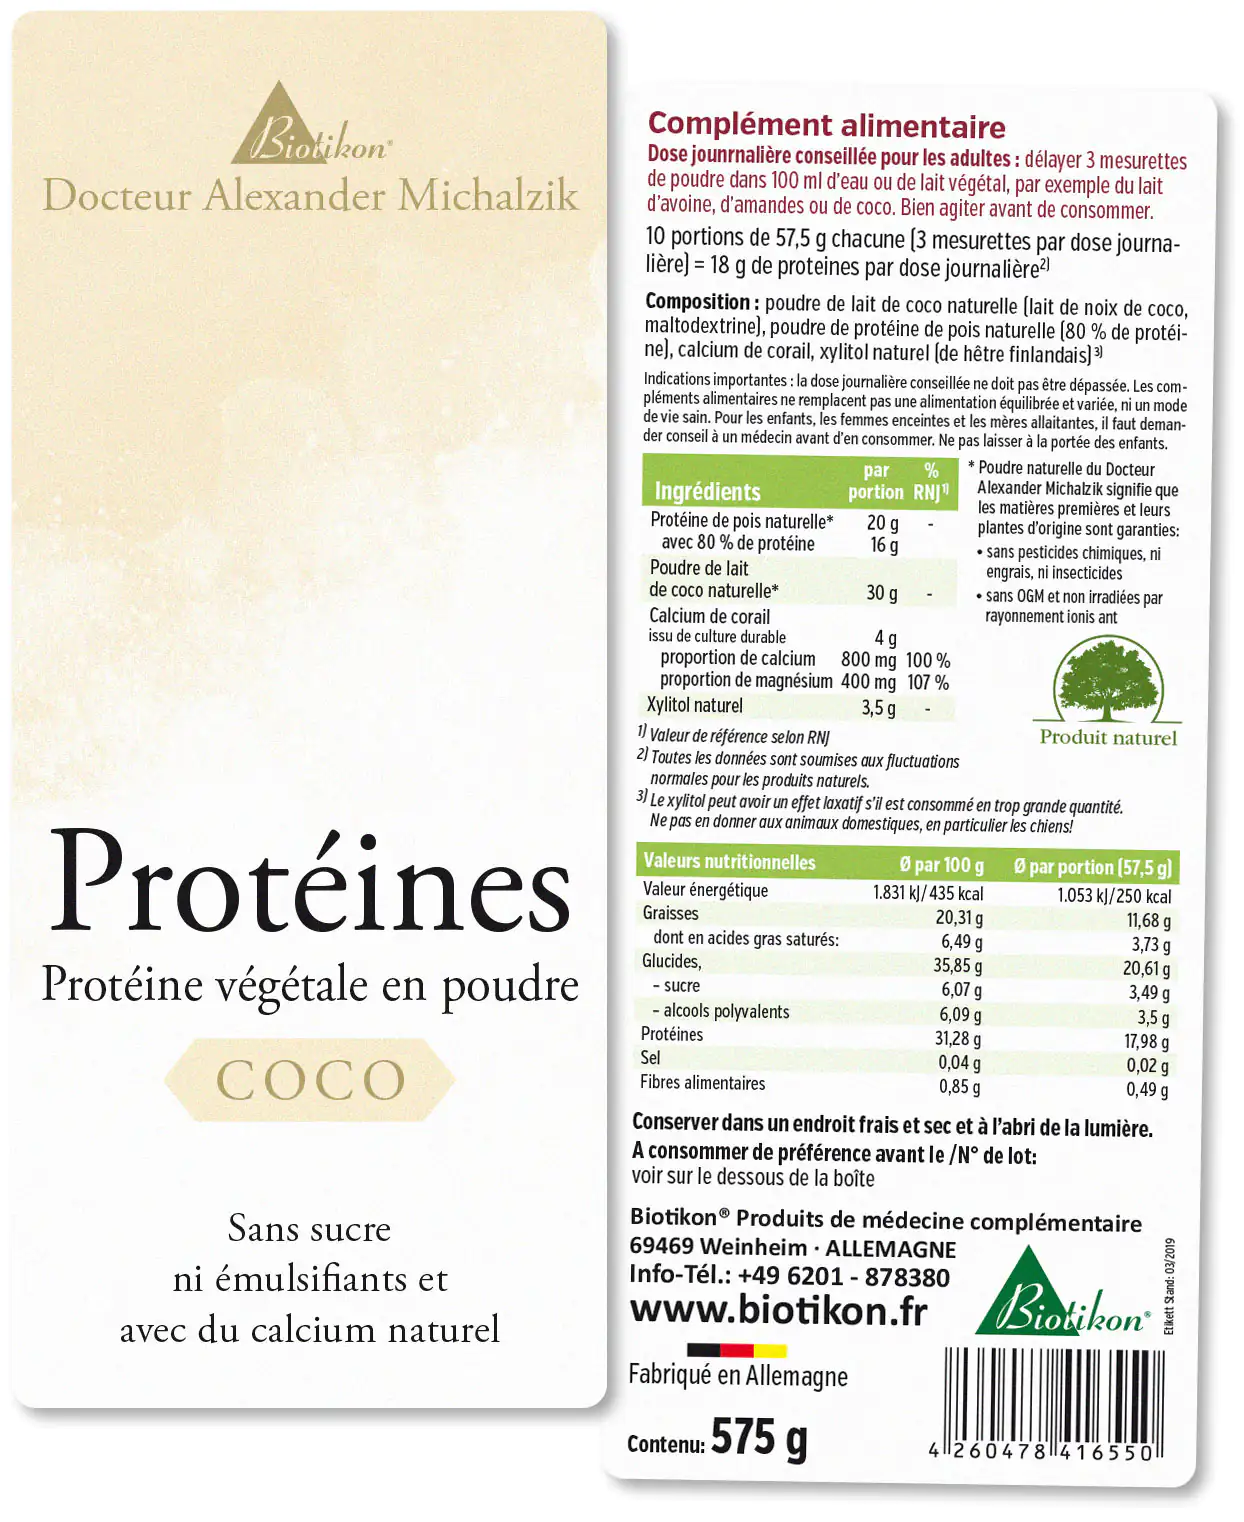 Protéines - en lot de 3, 2x Cacao + Aronia